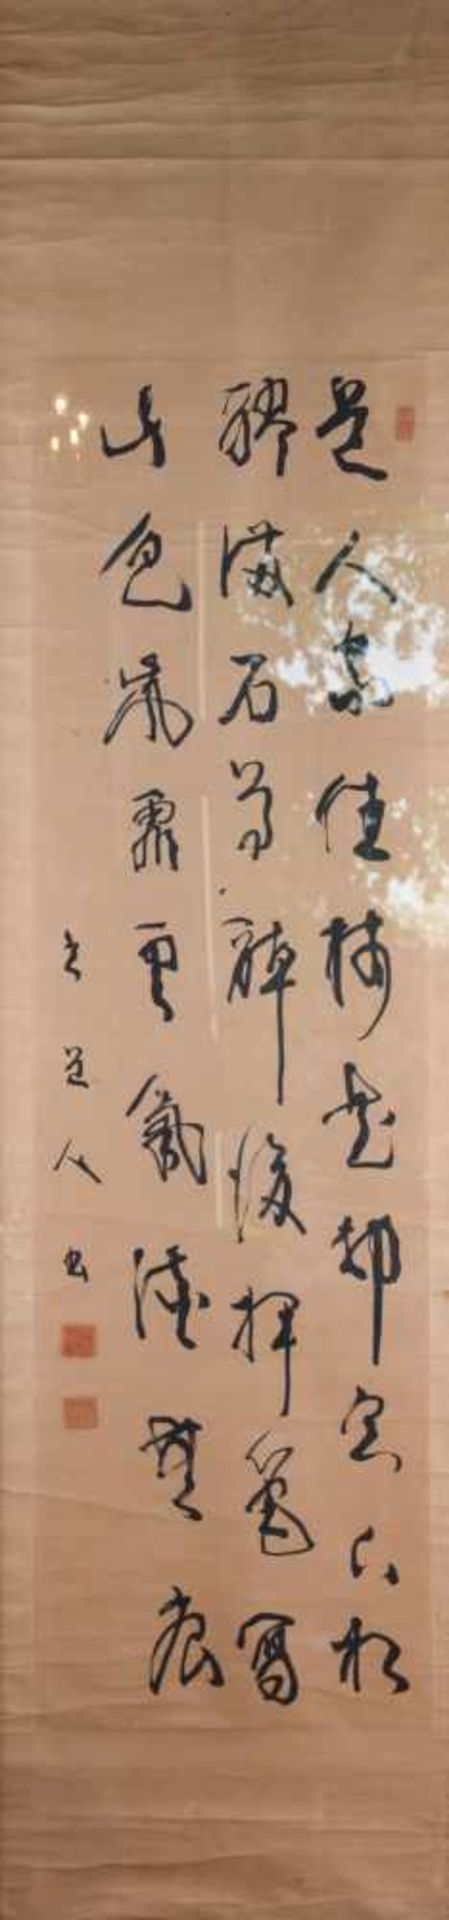 Kalligrafie China 18. / 19. Jhd.mit Grasschrift, mehrere Siegel, 195 cm x 48 cmCalligraphy China